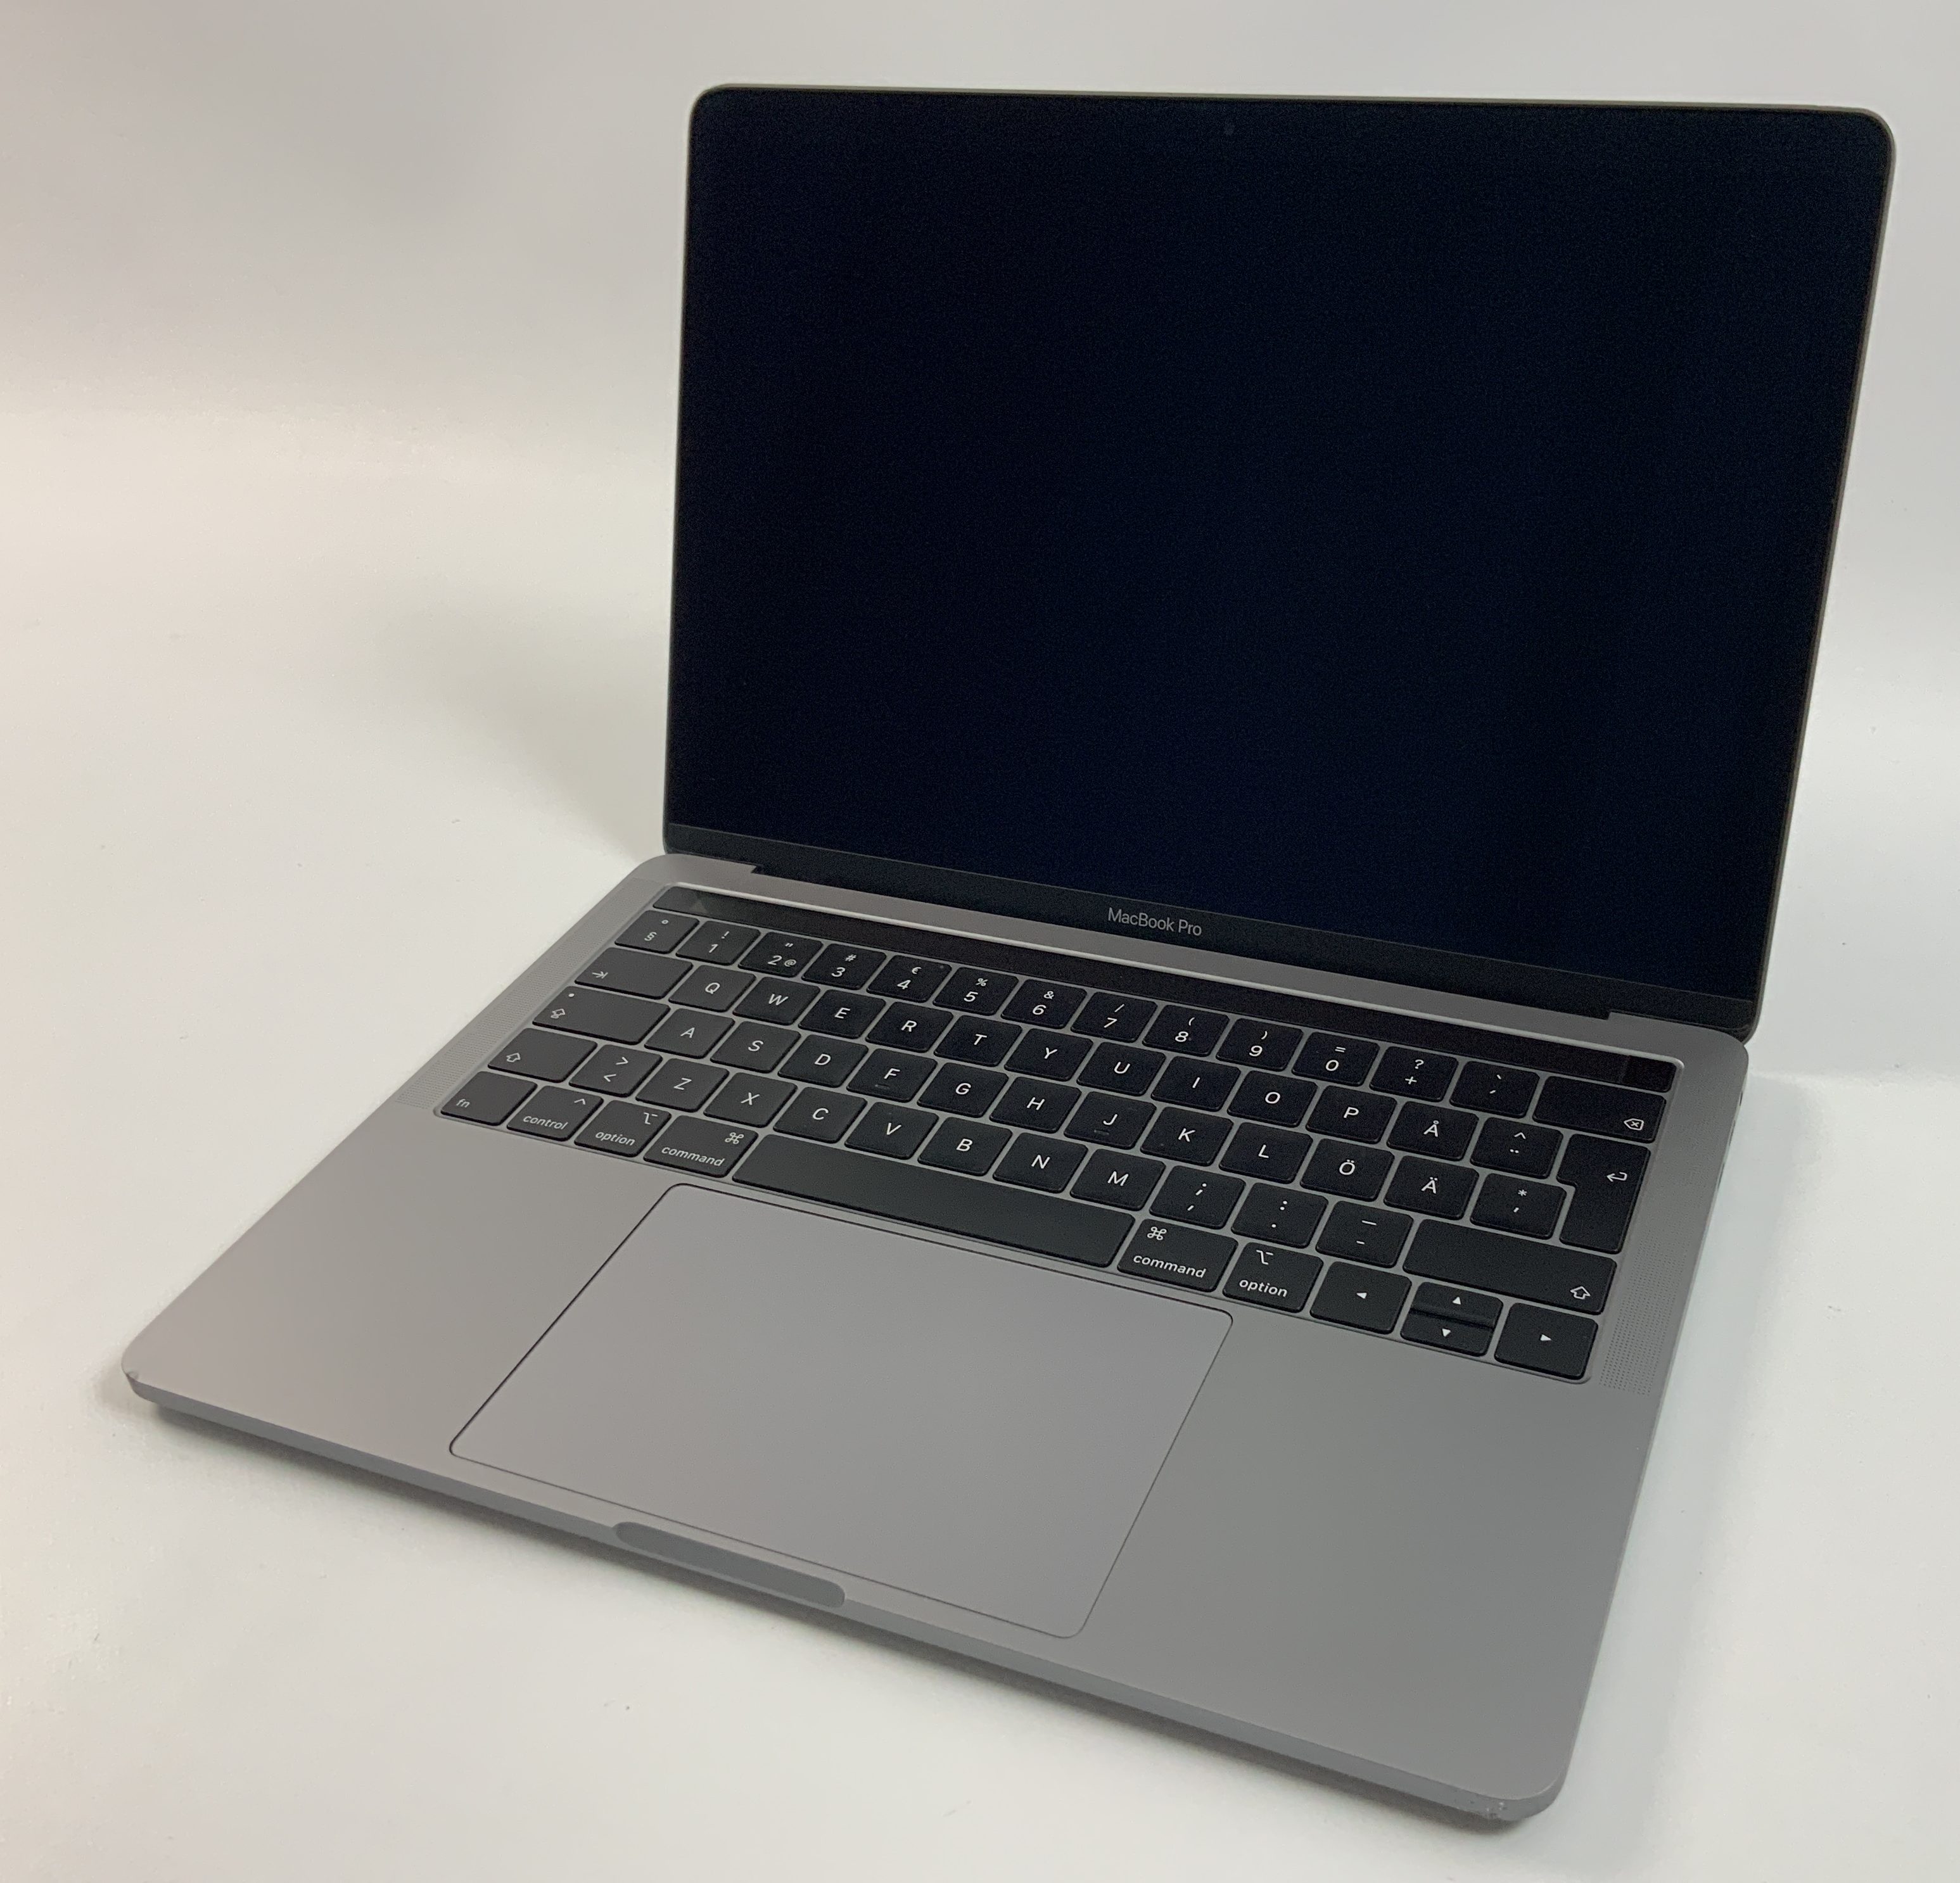 MacBook Pro 13" 4TBT Mid 2019 (Intel Quad-Core i5 2.4 GHz 8 GB RAM 256 GB SSD), Space Gray, Intel Quad-Core i5 2.4 GHz, 8 GB RAM, 256 GB SSD, immagine 1